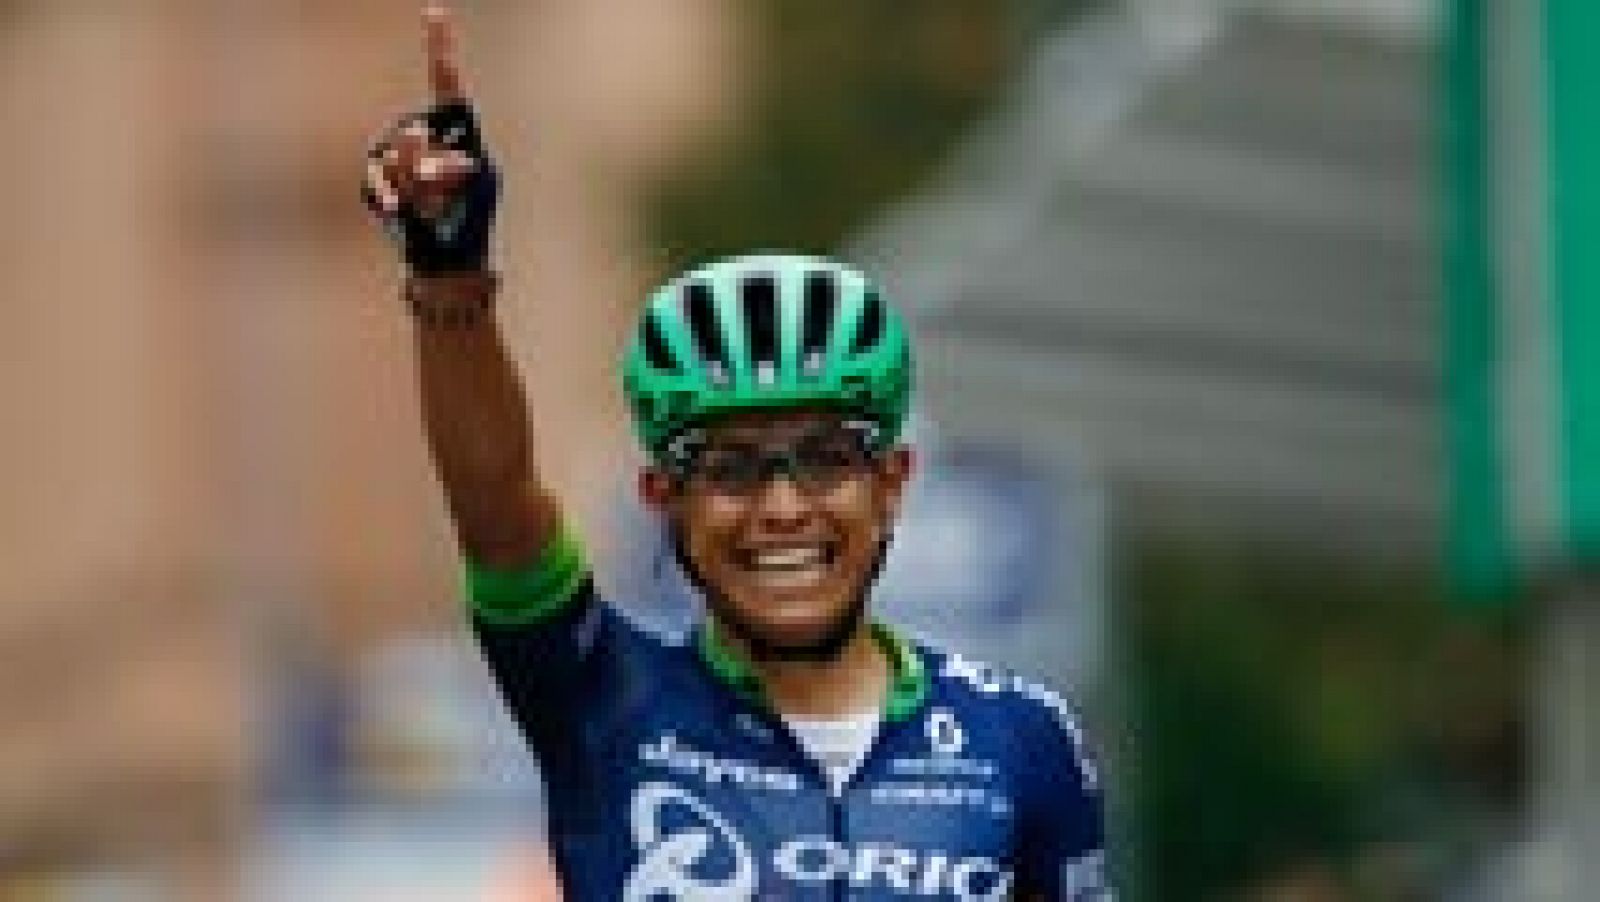 El colombiano Esteban Chaves (Orica) se ha impuesto este sábado en la 110 edición del Giro de Lombardía, prueba que cierra el calendario del World Tour, con salida de Como y llegada a Bérgamo, de 241 km de recorrido.